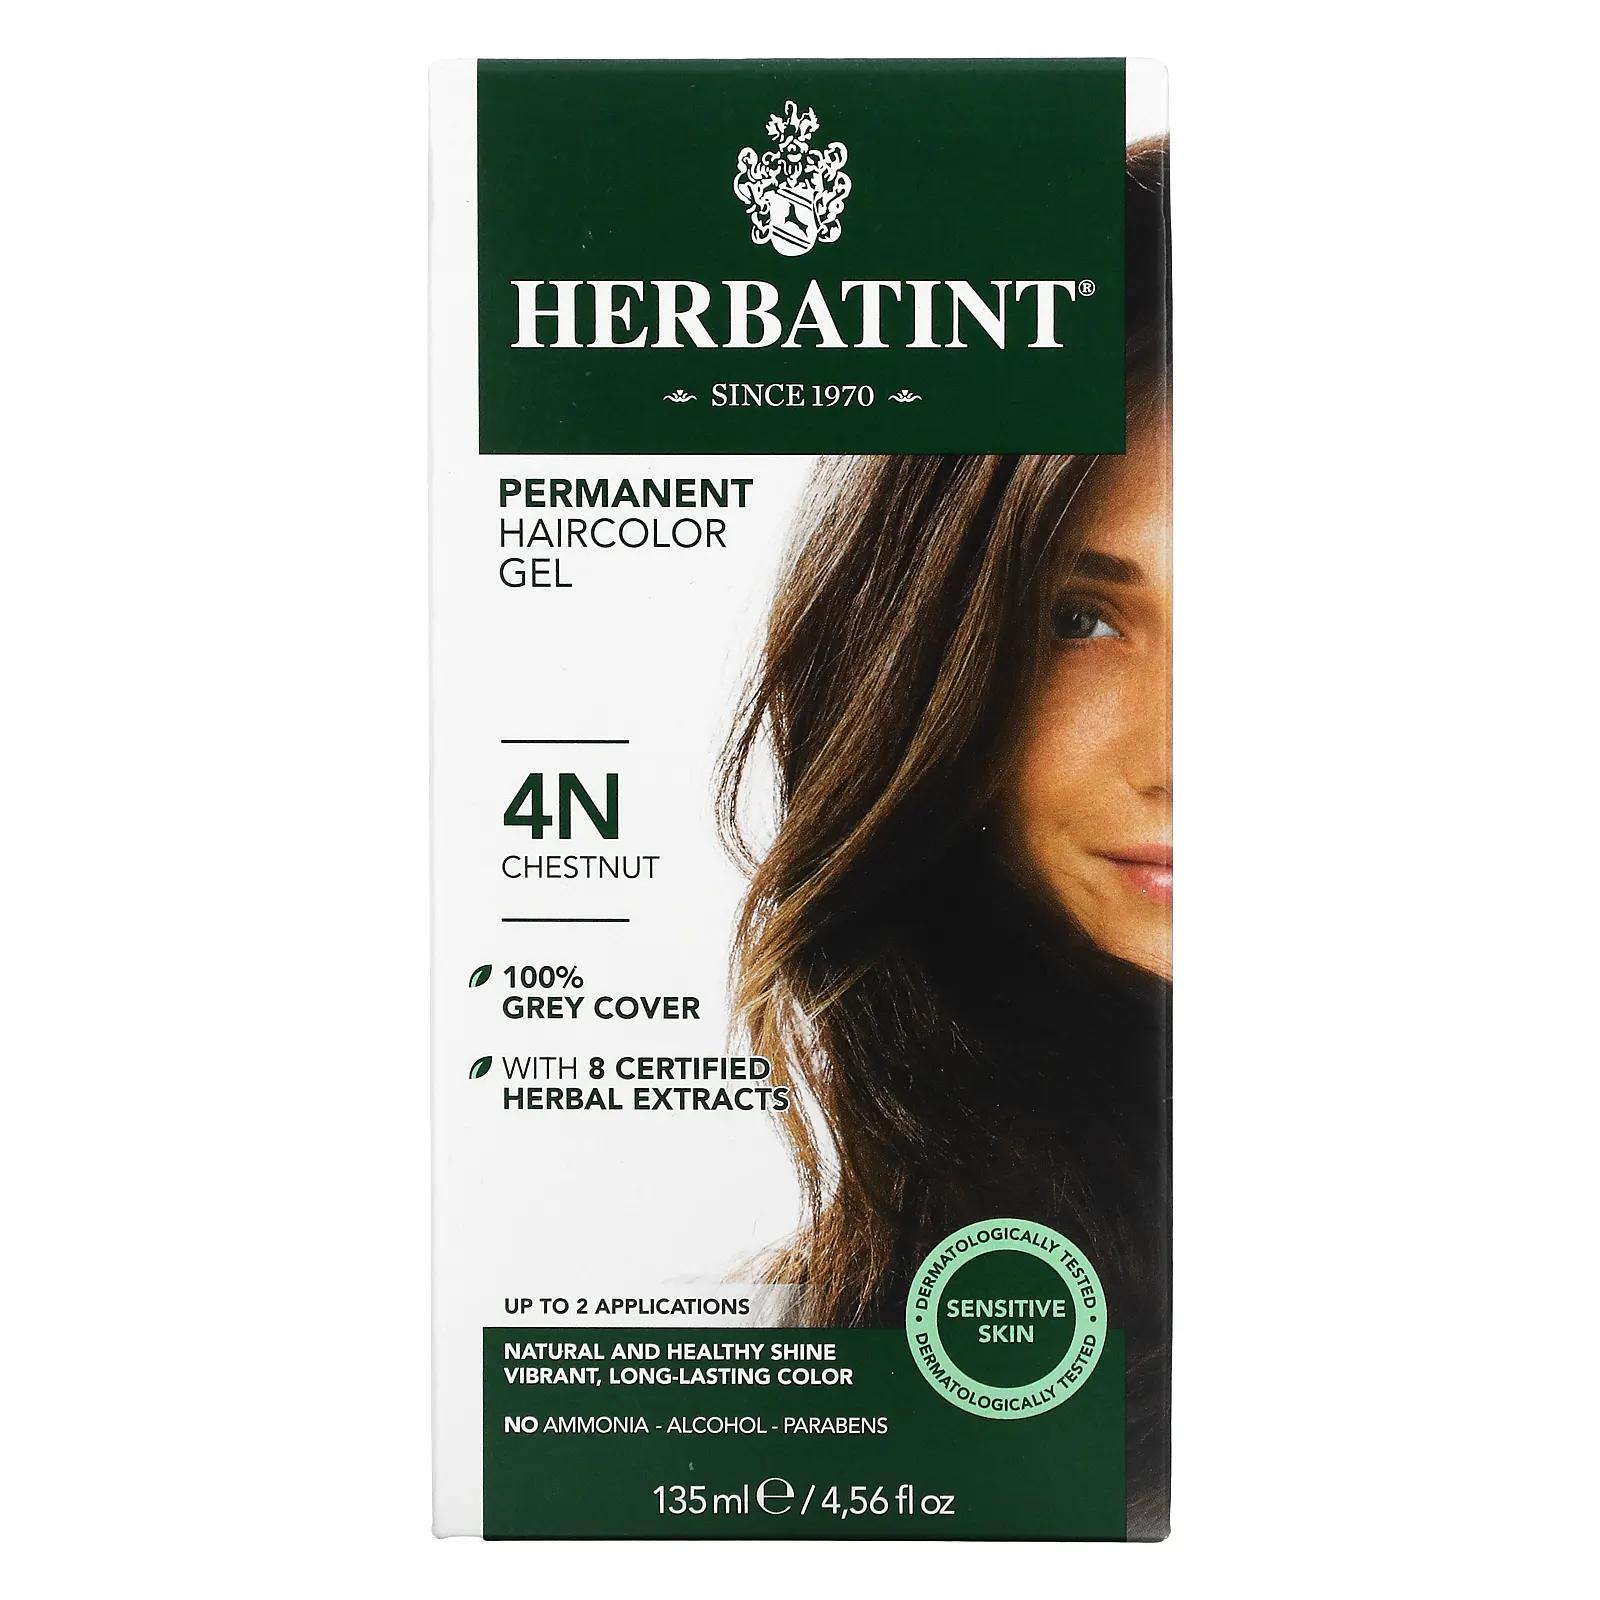 Herbatint Перманентная растительная краска-гель для волос 4N каштан 4,56 жидкой унции (135 мл) herbatint перманентная краска гель для волос 5n светлый каштан 4 56 жидкой унции 135 мл